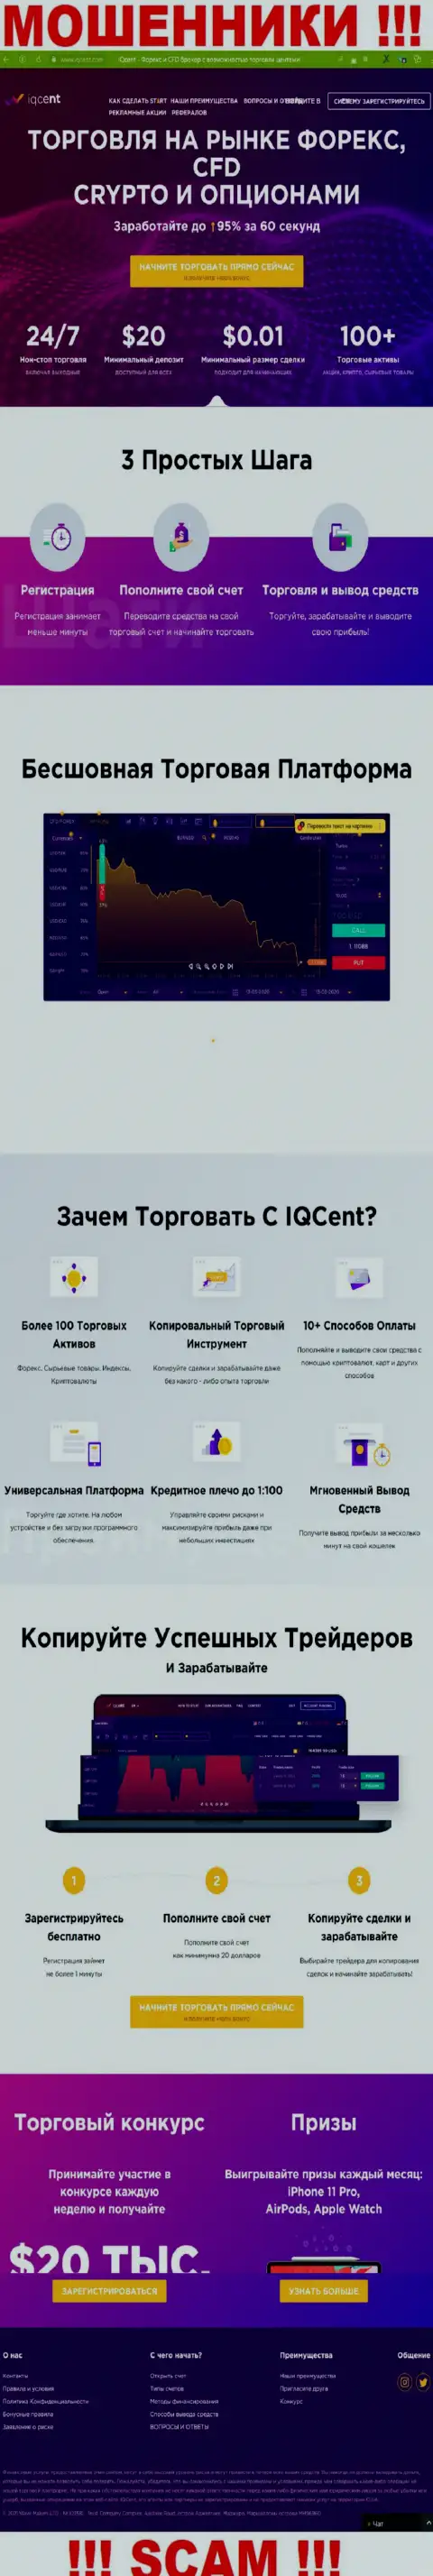 Официальный сайт мошенников IQCent, заполненный информацией для наивных людей